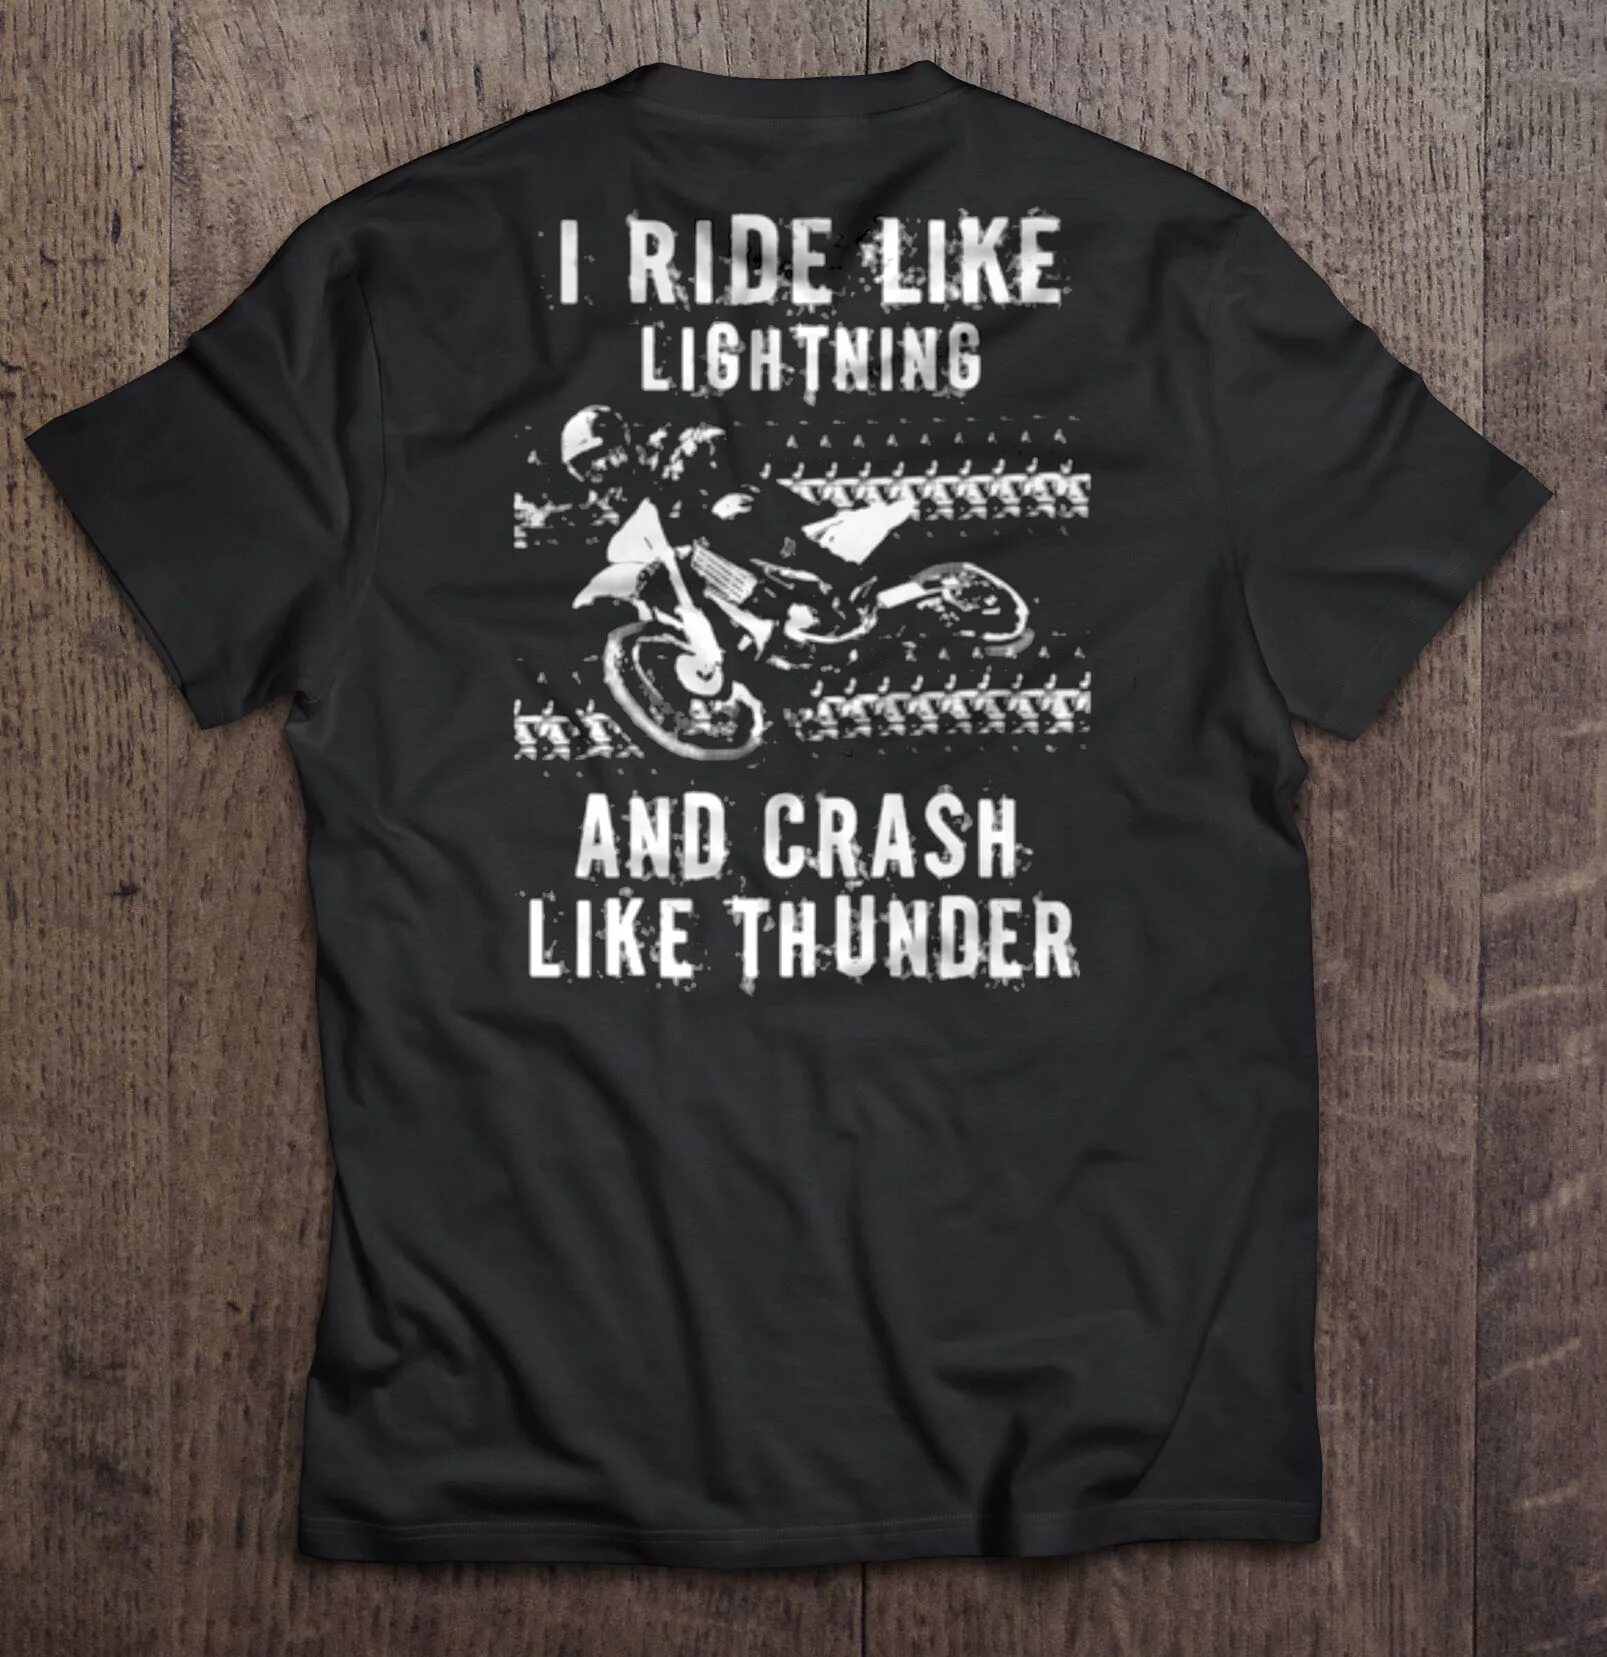 Like ride. Ride like Lightning, crash like Thunder.